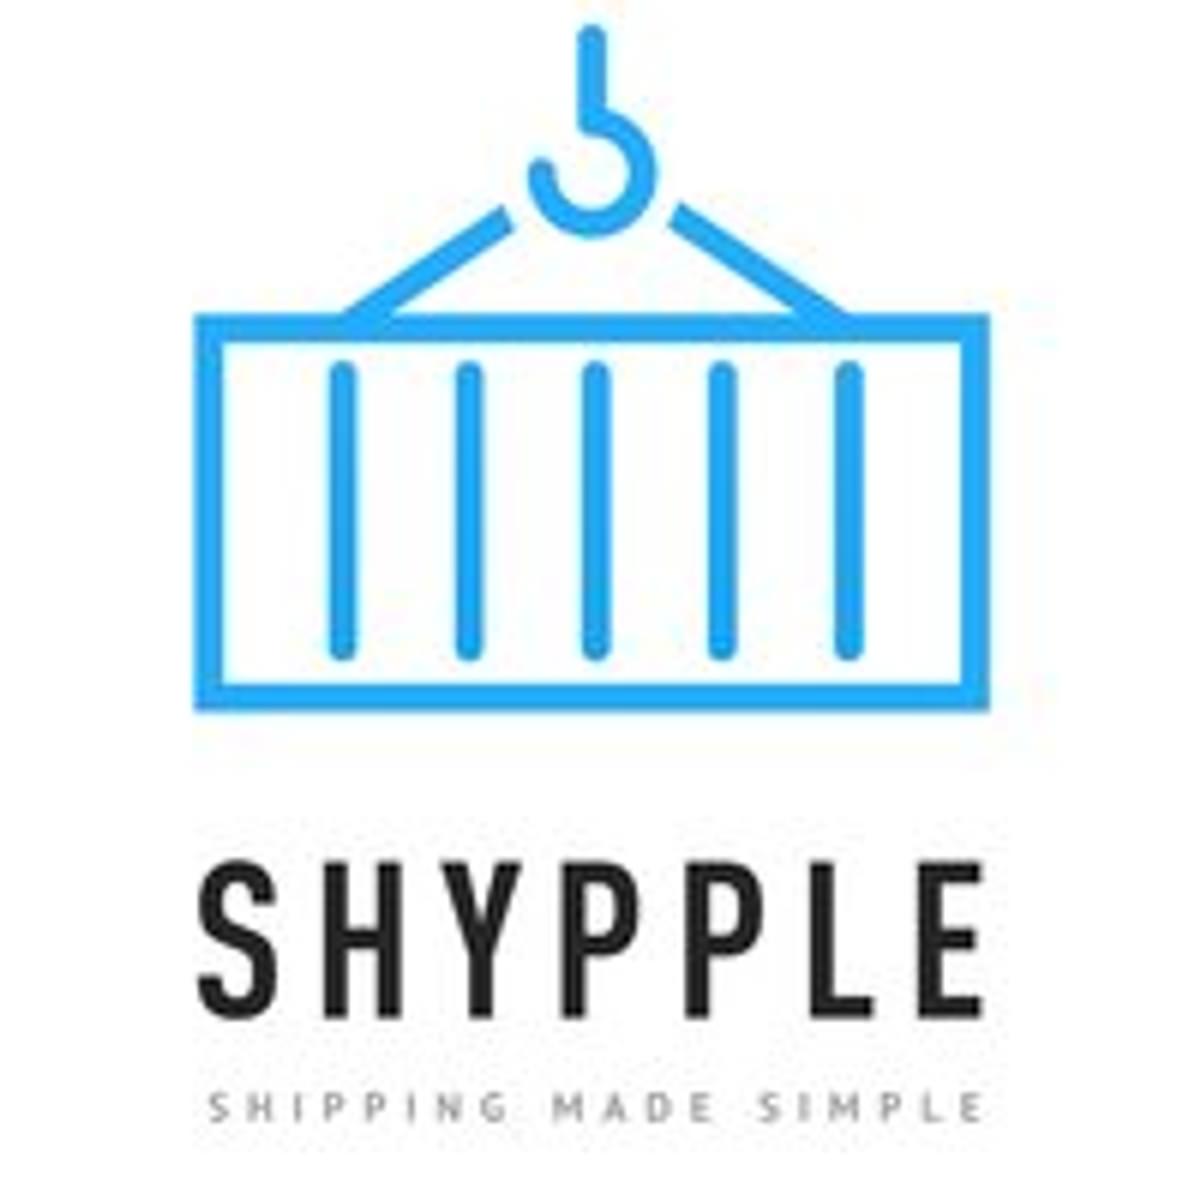 Digitale expediteur Shypple ontvangt 1,7 miljoen euro kapitaalinjectie image